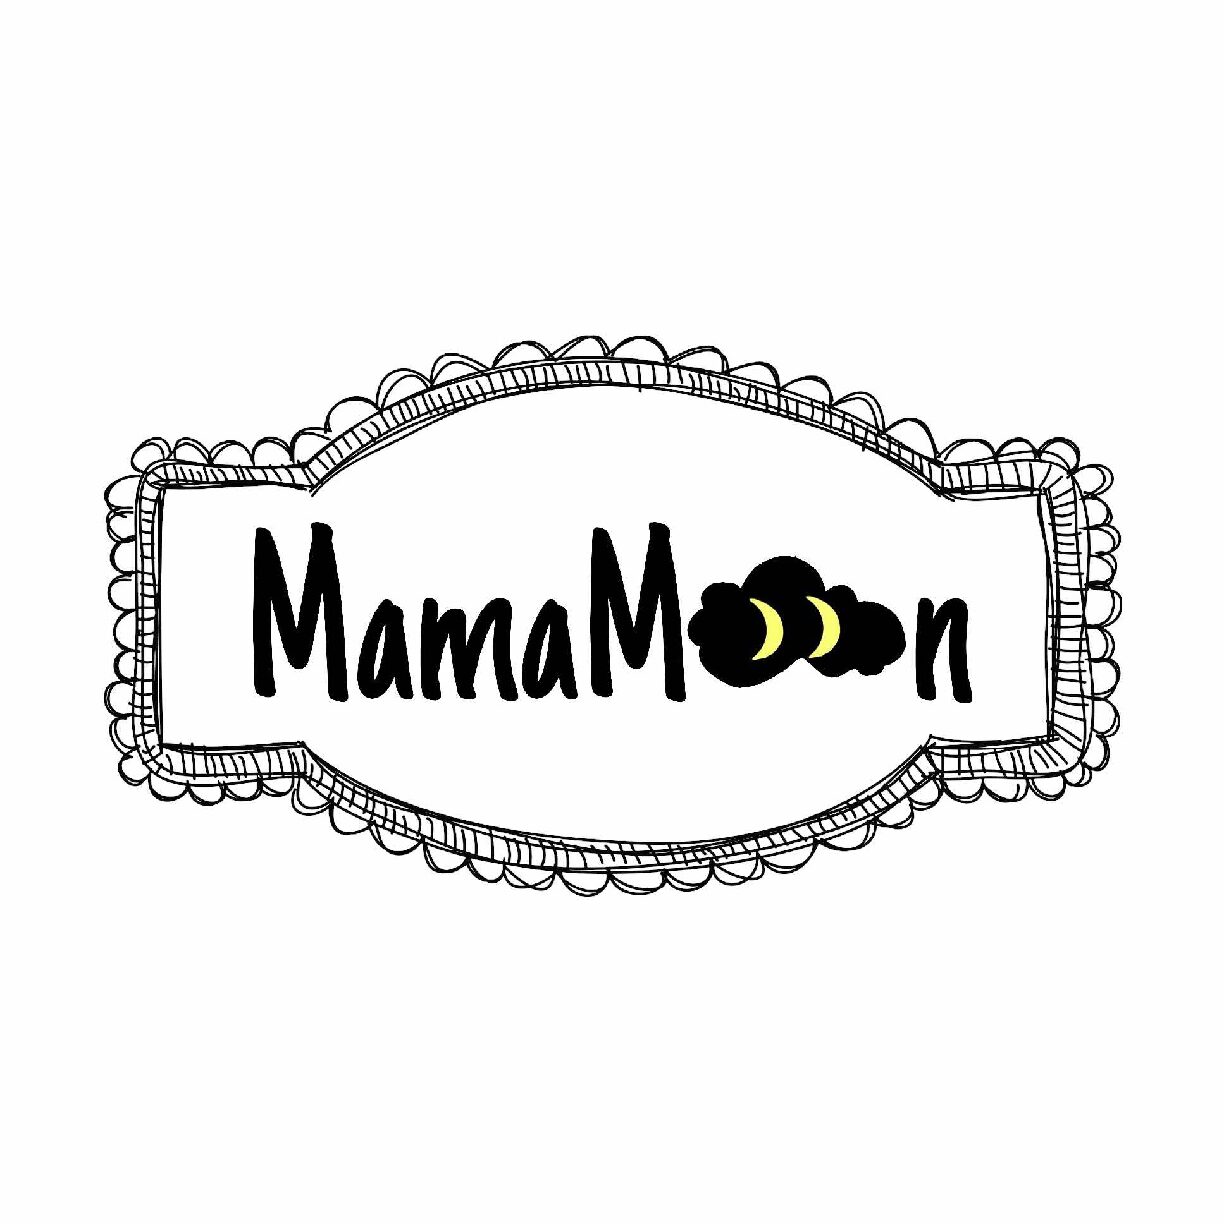 MamaMoon